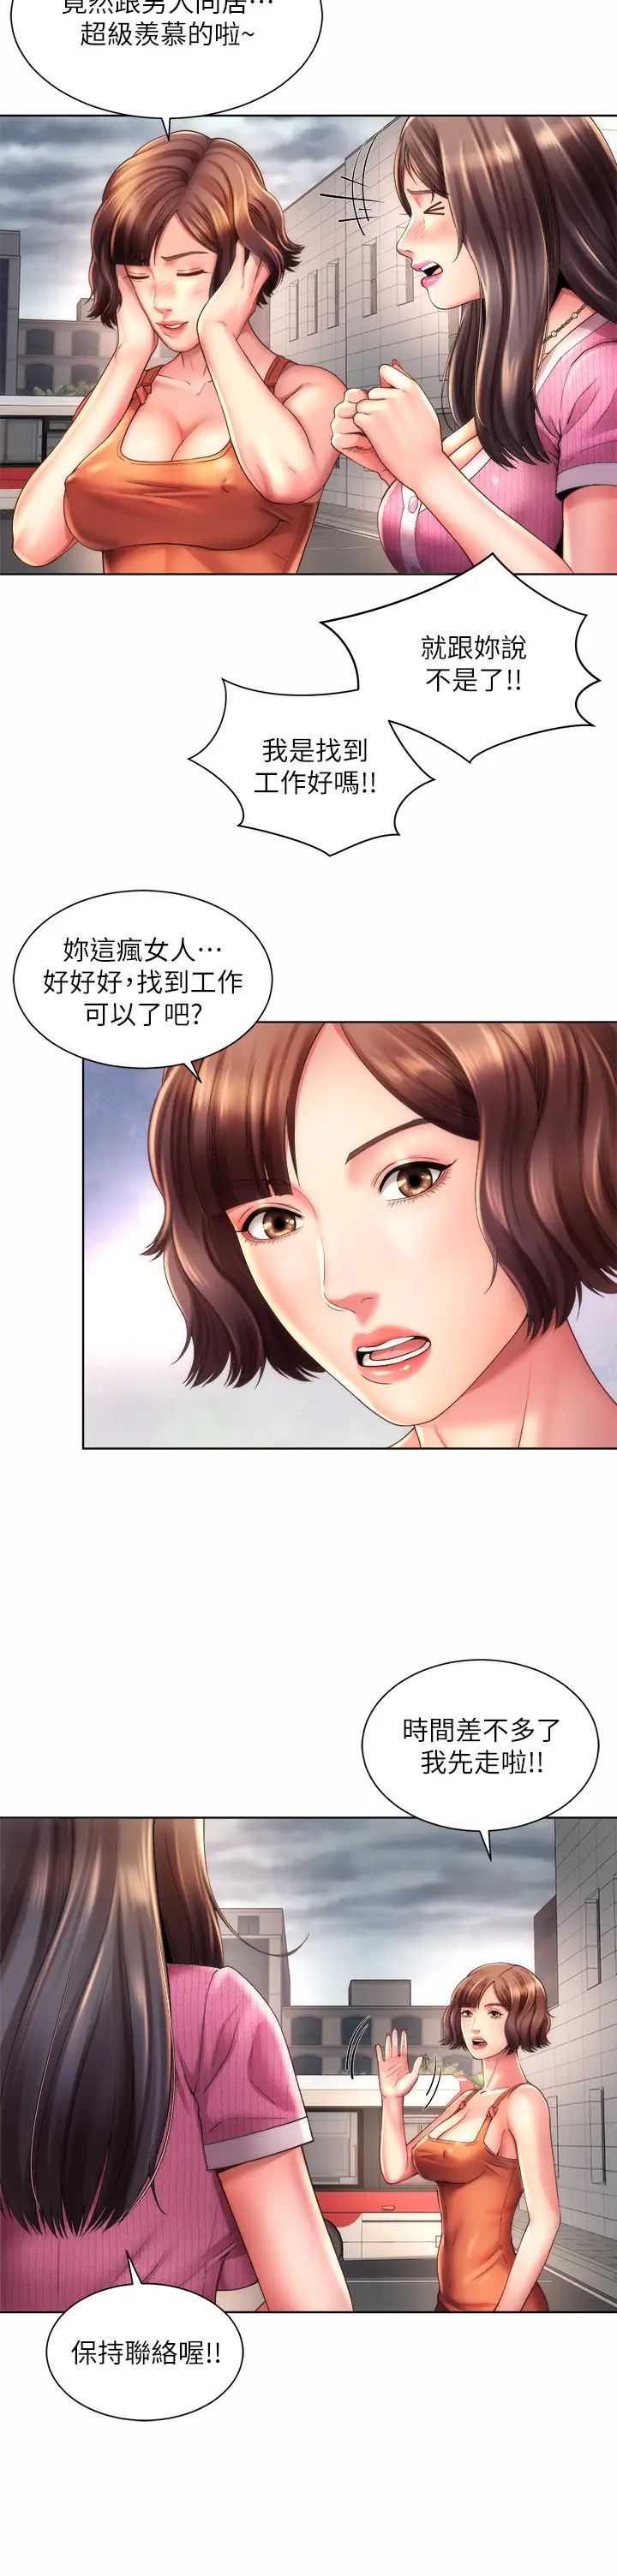 韩国污漫画 海灘女神 第37话刺激的同居生活 23